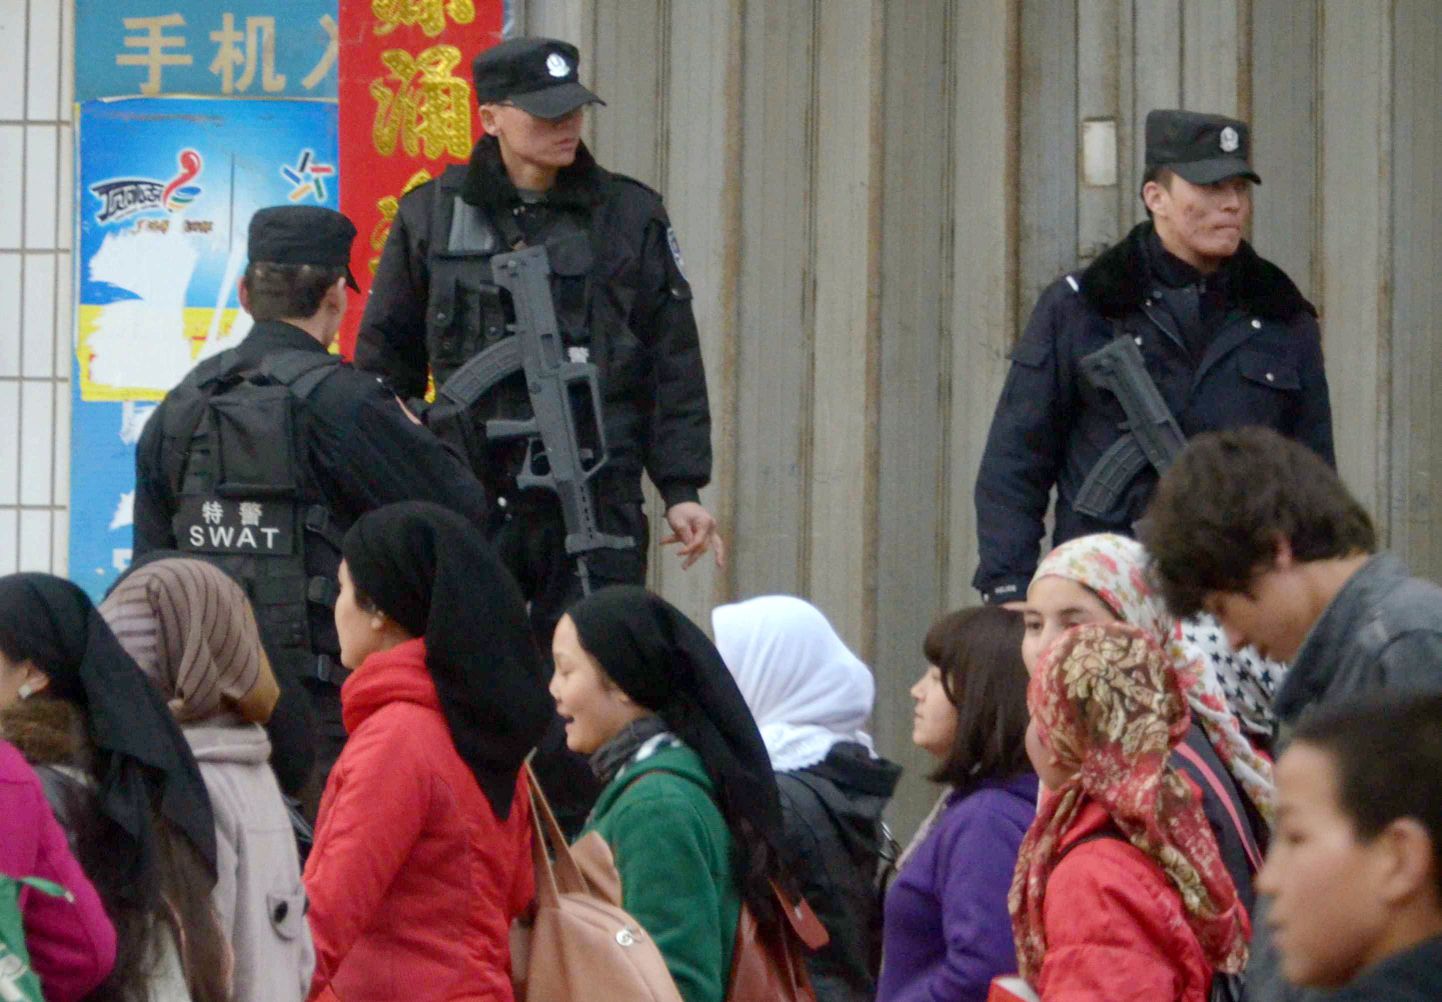 Uiguurid möödumas Hiina politseinikest Xinjiangi Uiguuri autonoomses piirkonnas